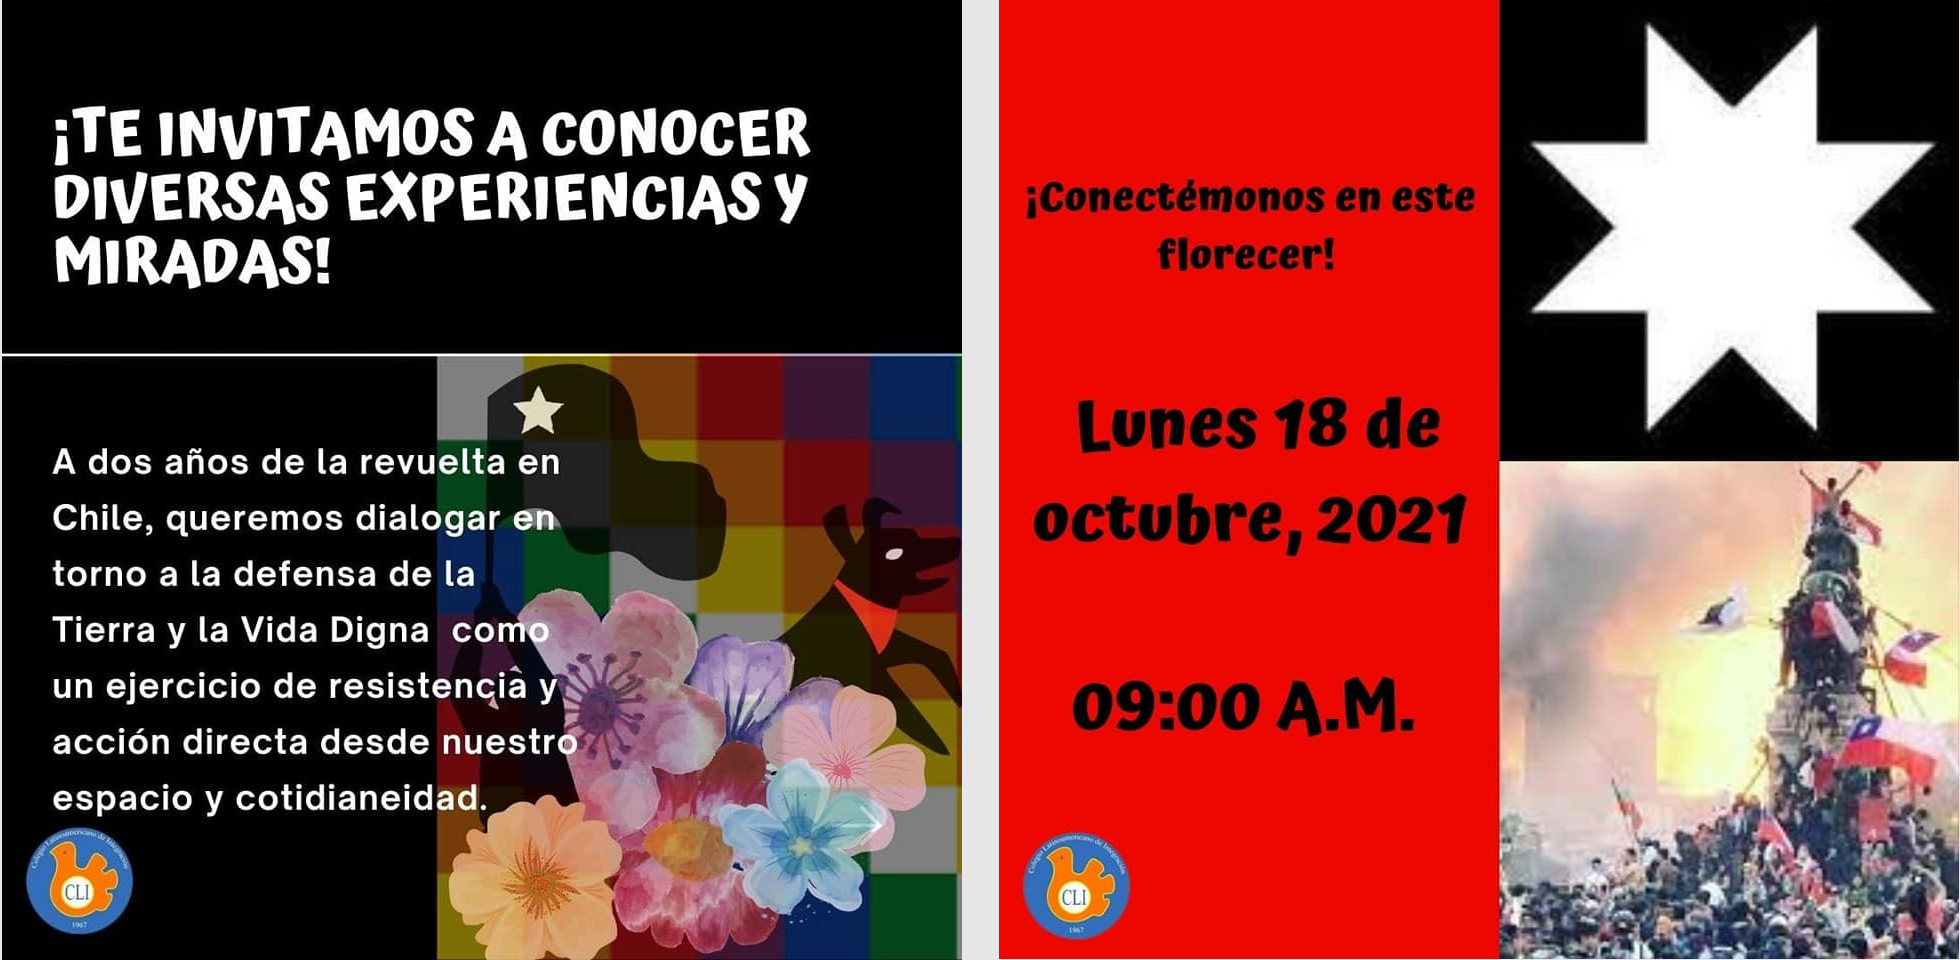 conversatorio 18 octubre 2021 en el Latino